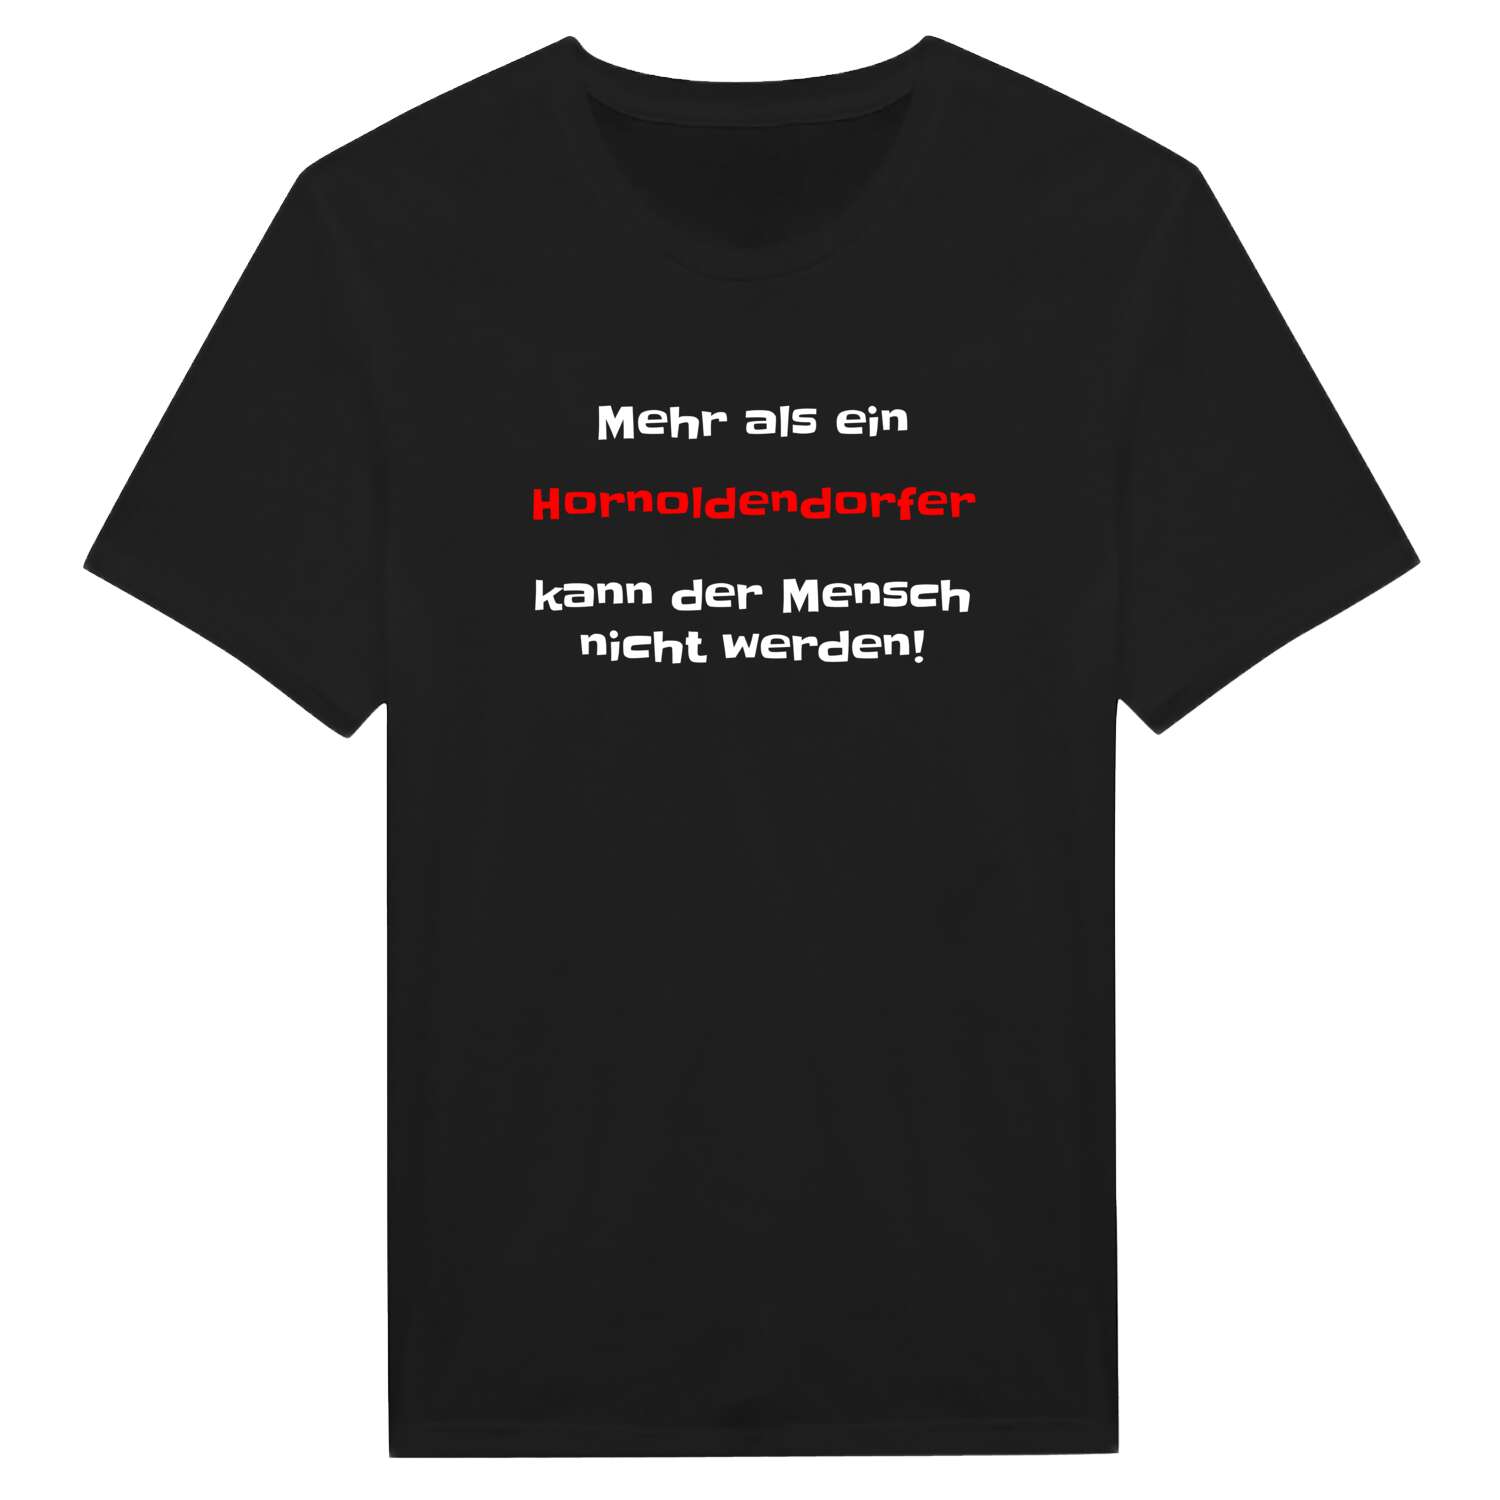 Hornoldendorf T-Shirt »Mehr als ein«